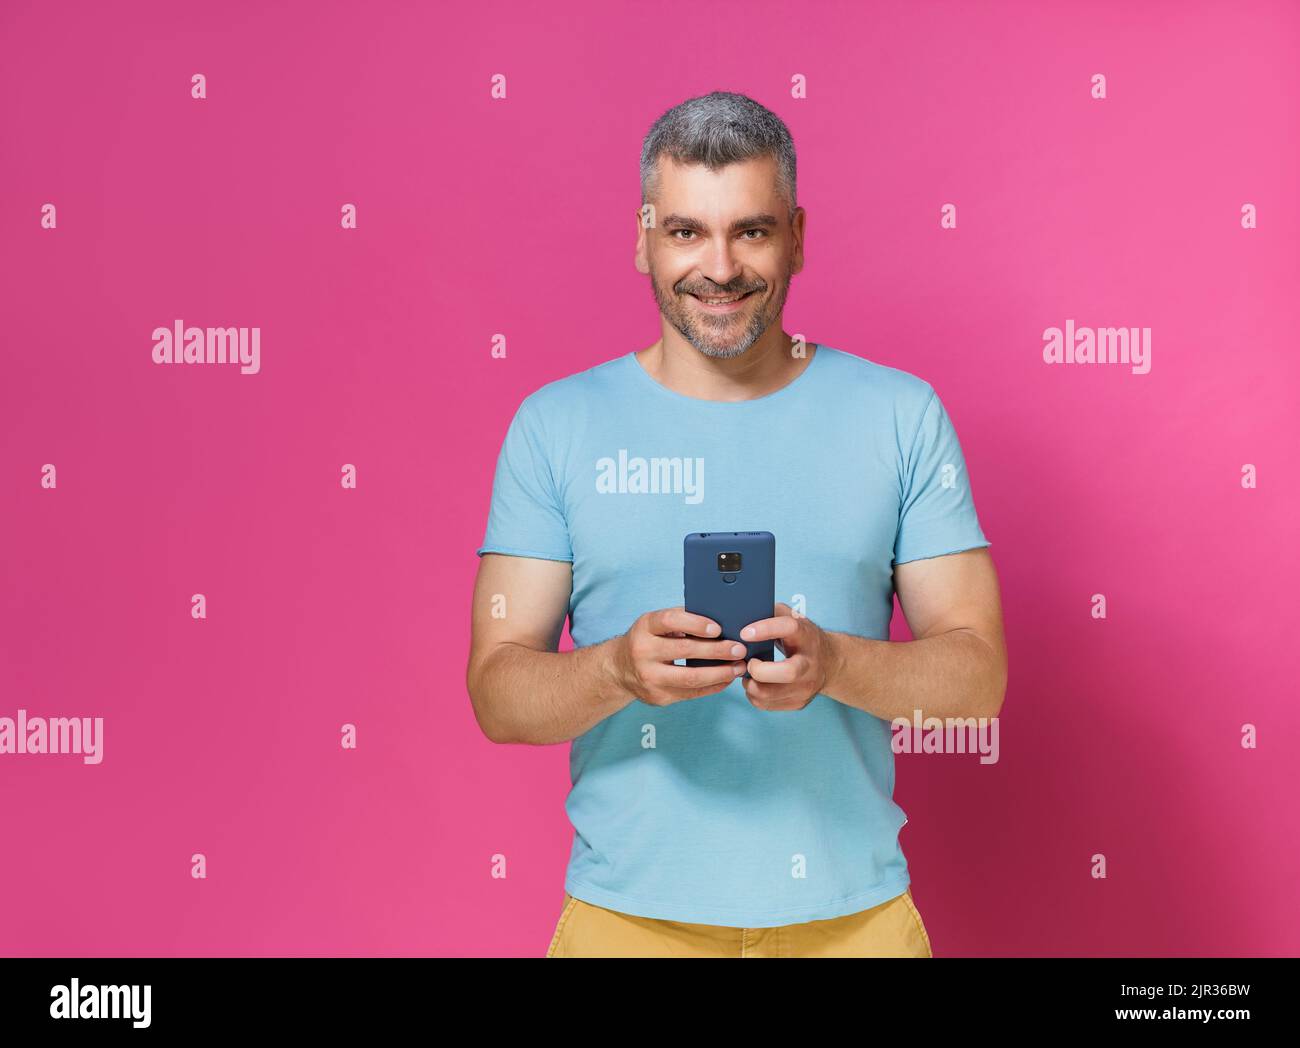 Allegro giovane uomo adulto 30s 40s in casual vestire tenere smartphone lettura di testo o la navigazione online isolato su sfondo rosa. Uomo mucho in t-shirt blu con scatto da studio per telefono. Foto Stock